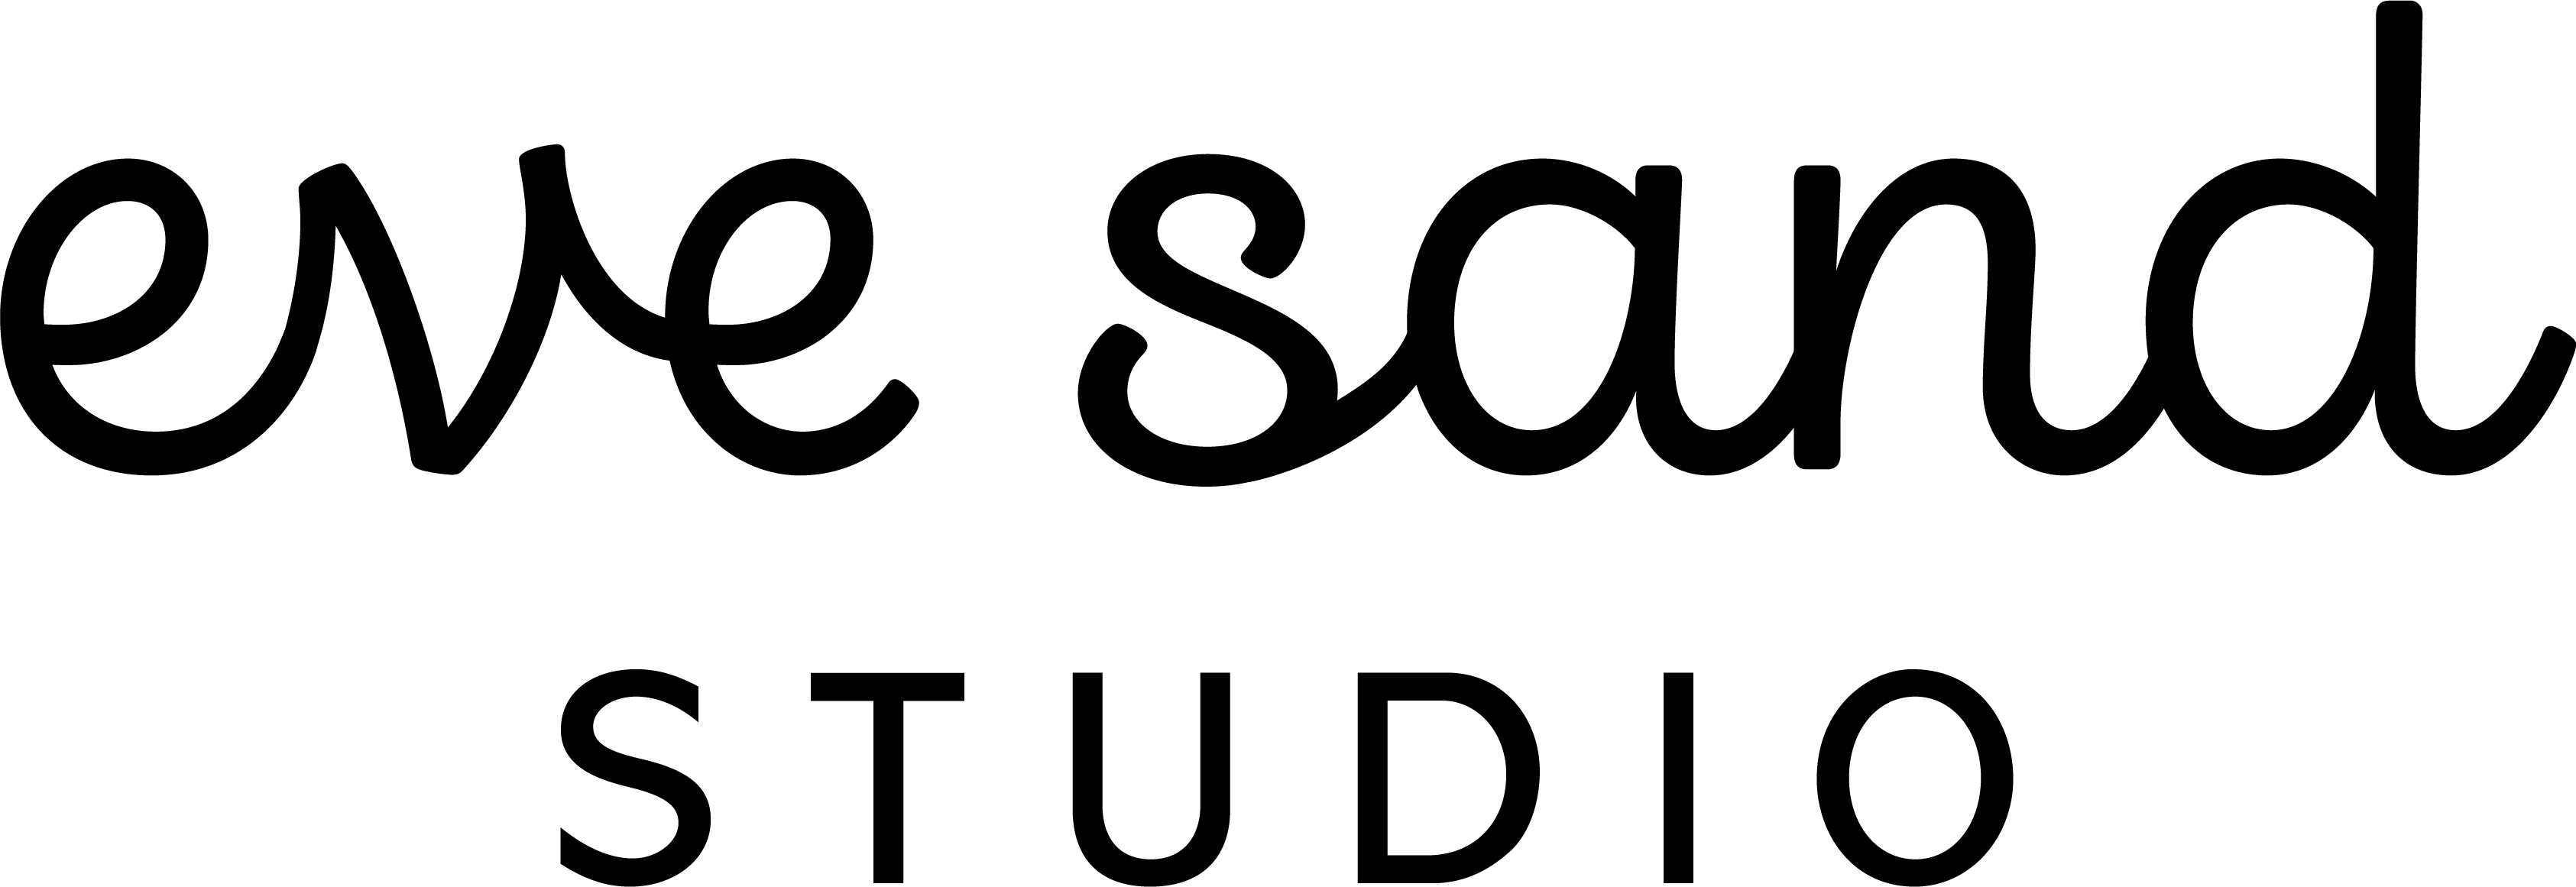 Eve Sand Studio